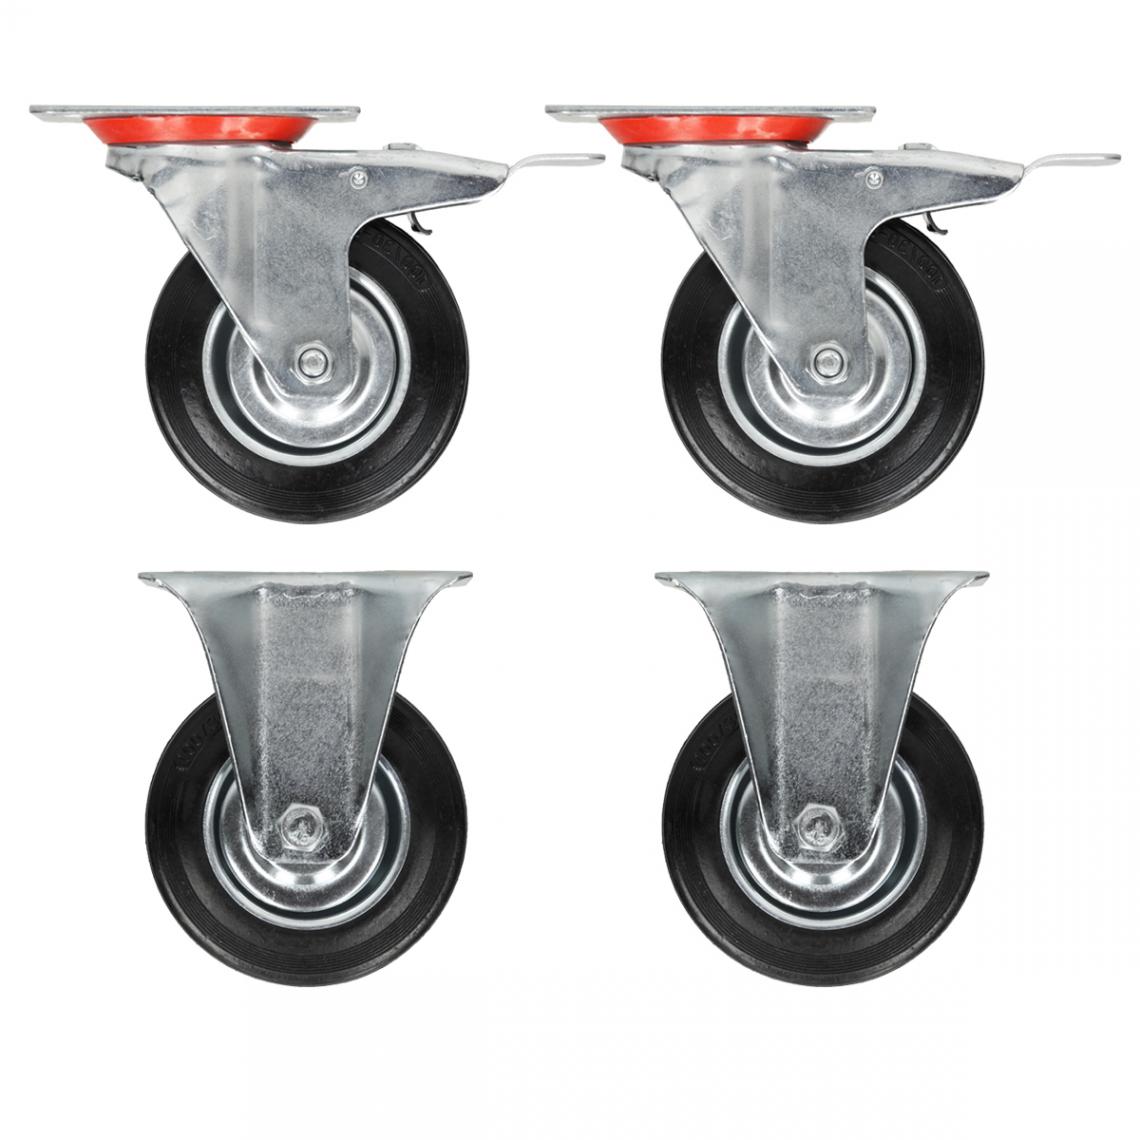 Ecd Germany - 4 x 125 mm roulettes de transport en caoutchouc 2x fixes + pivotantes avec frein - Pieds & roulettes pour meuble